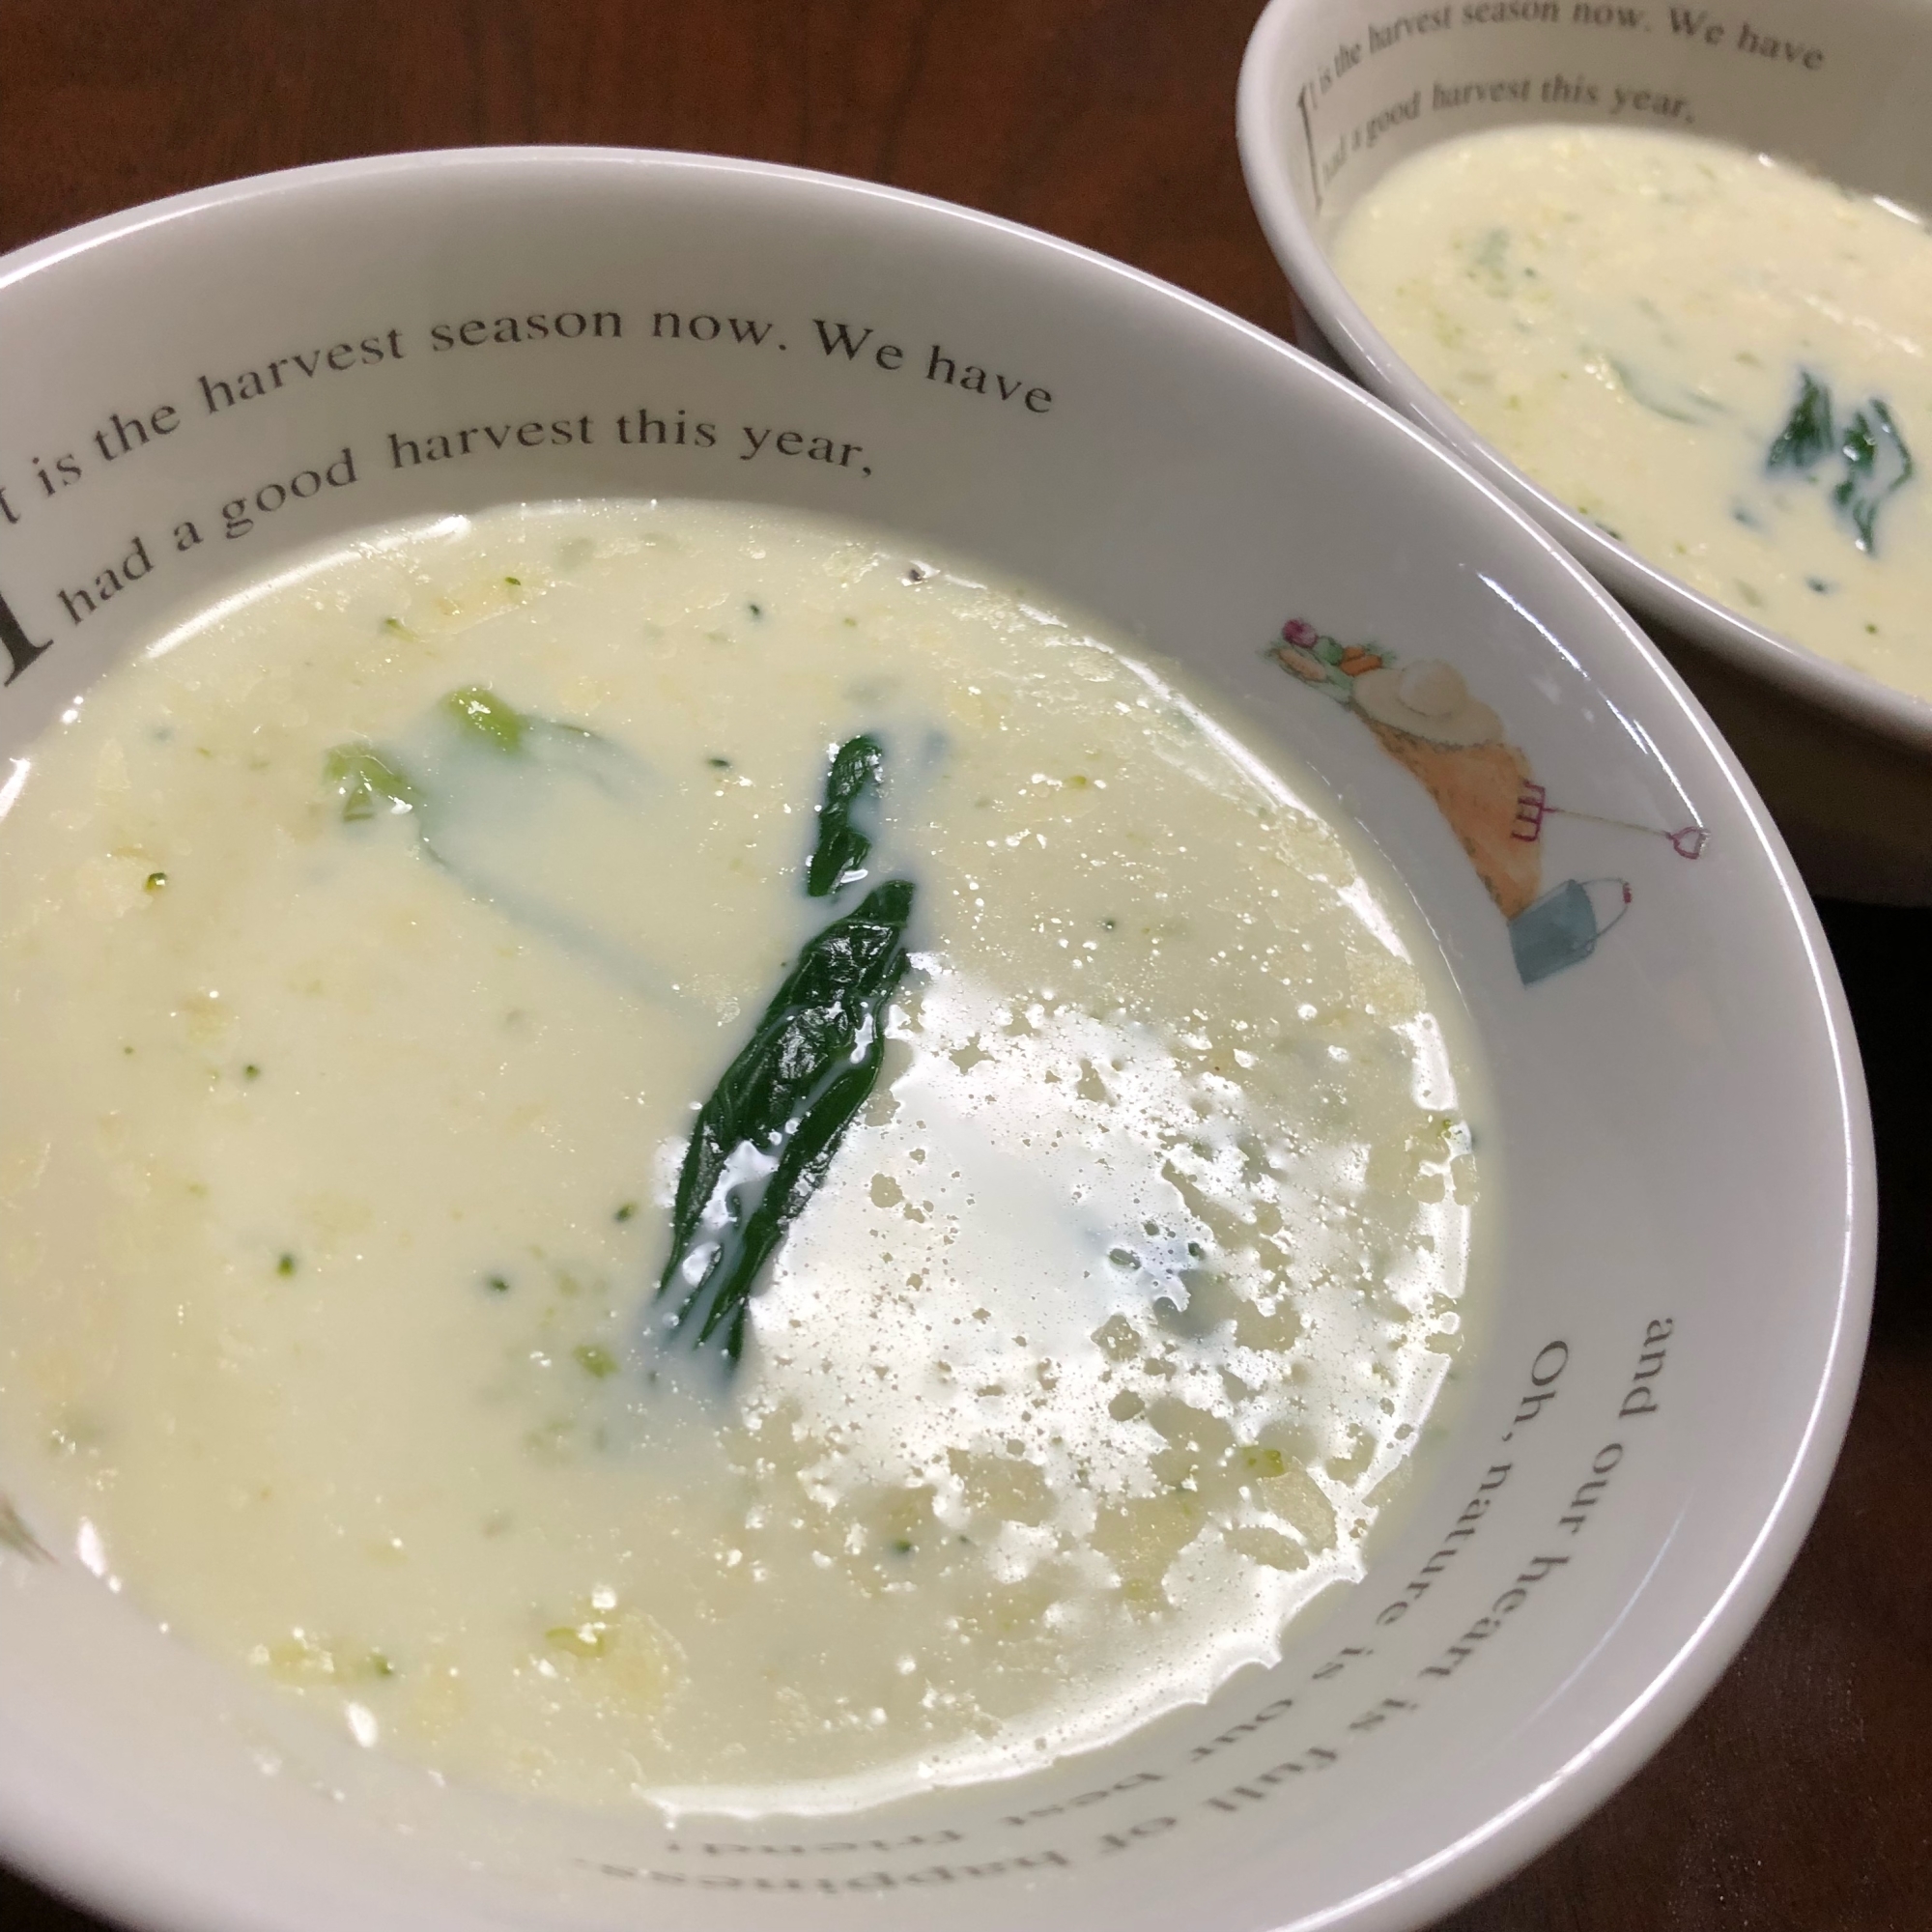 ブロッコリーの冷製スープ